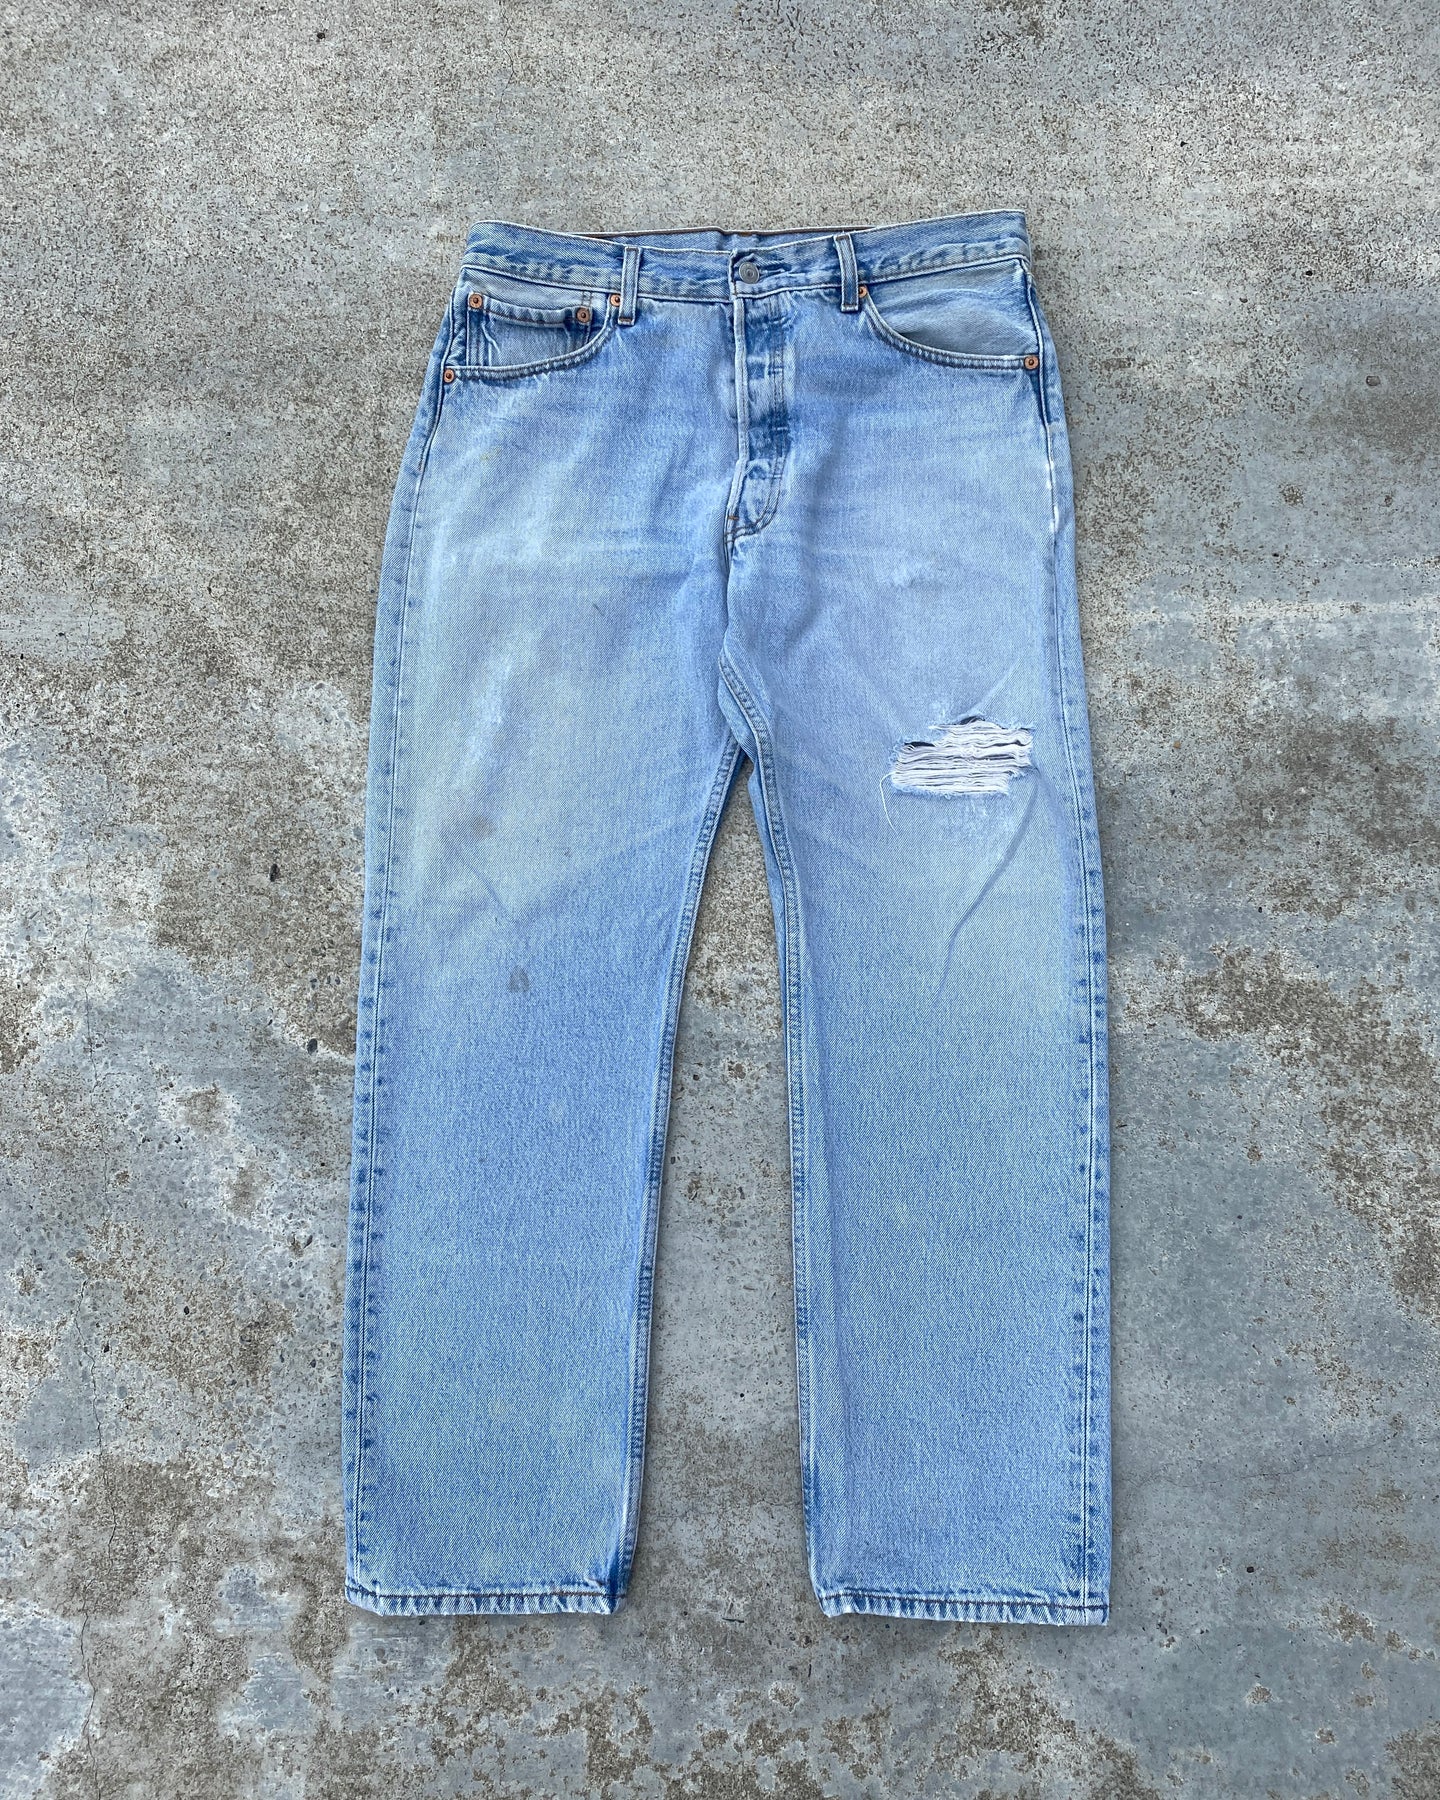 1990s Levi's 501 Light Wash Blowout Jeans - Size 33 x 30